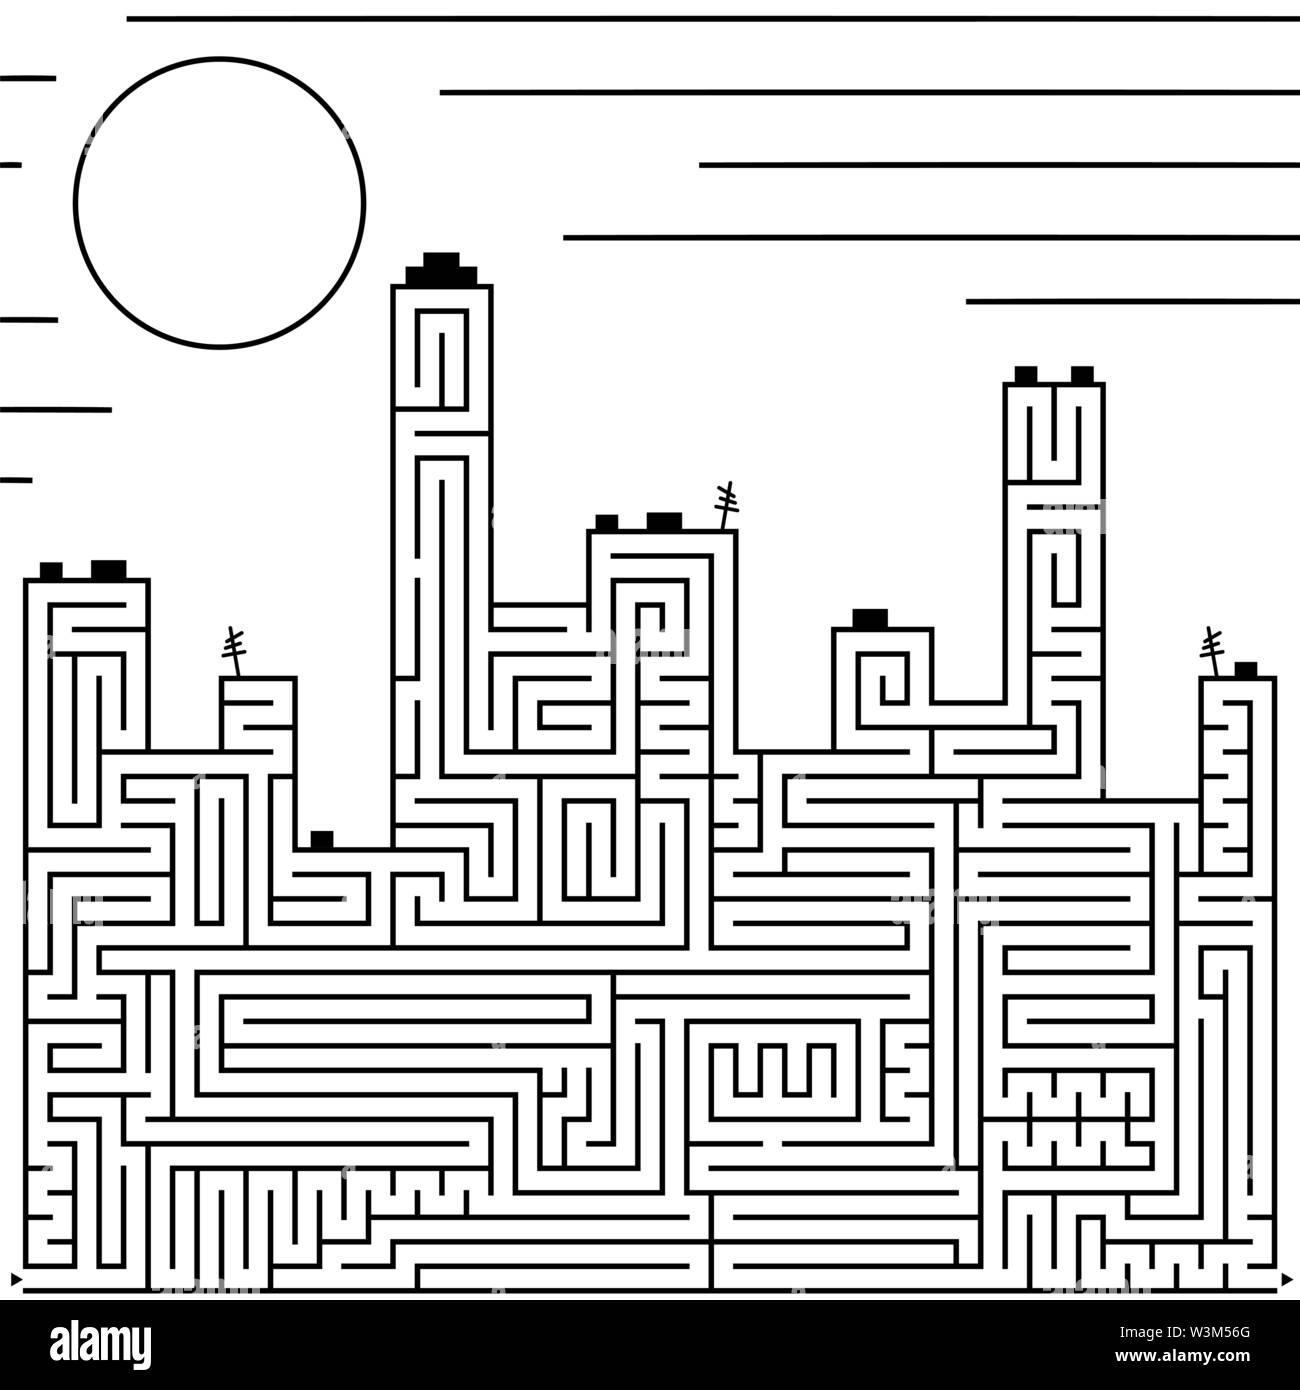 Abstract complex grande labirinto isolato in forma di edifici della città. Colore nero su uno sfondo bianco. Un interessante gioco per bambini. Semplice Illustrazione Vettoriale